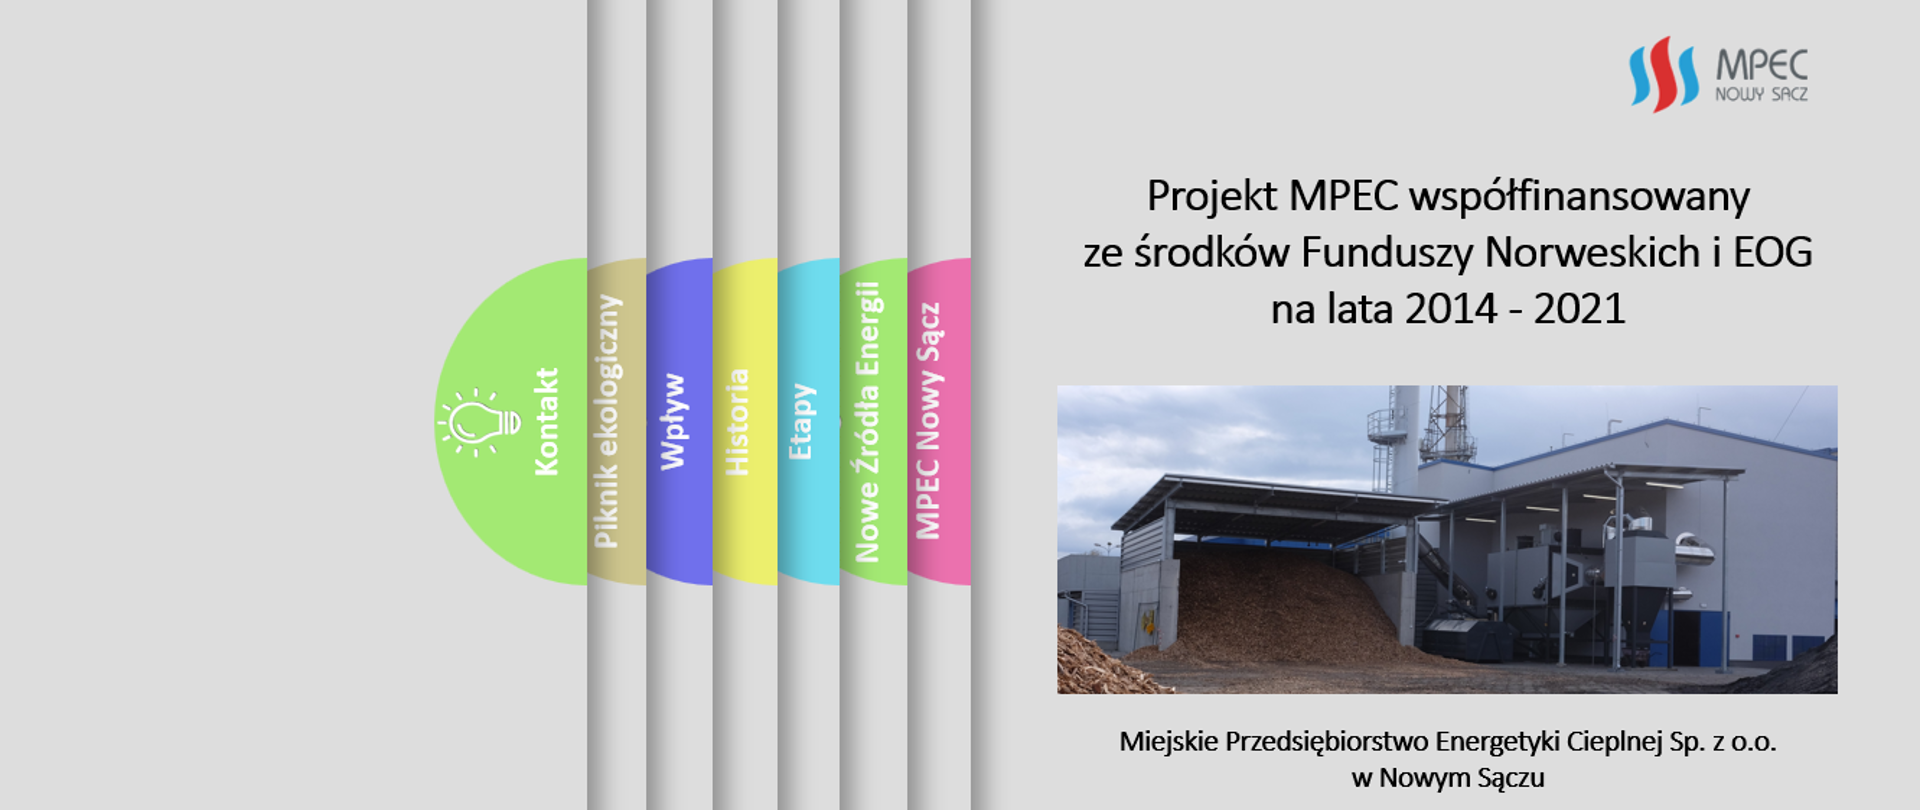 Projekt MF EOG Nowe Źródła Energii w MPEC Nowy Sącz